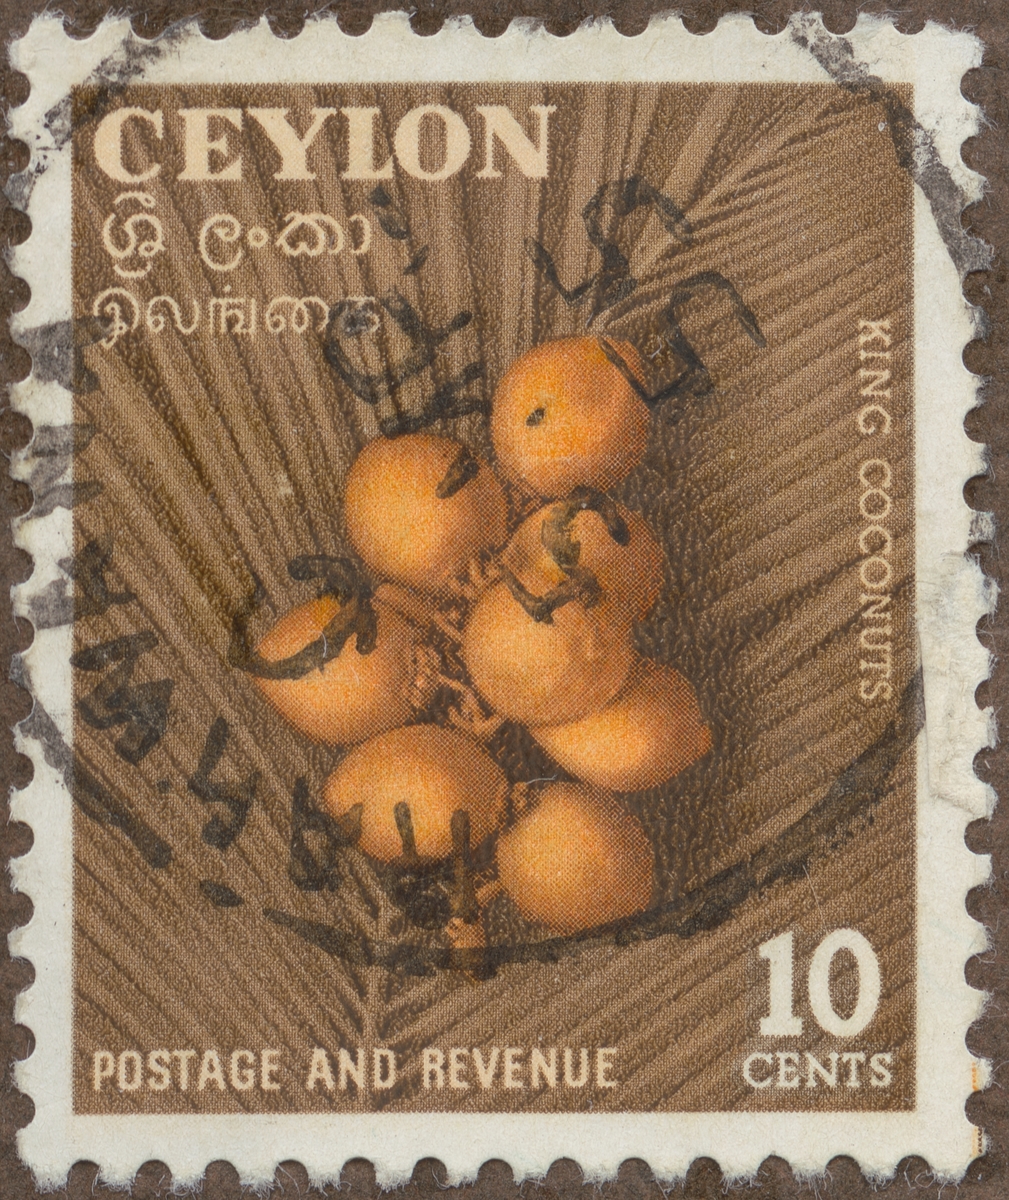 Frimärke ur Gösta Bodmans filatelistiska motivsamling, påbörjad 1950.
Frimärke från Ceylon, 1954. Motiv av så kallade "King" kokosnötter.